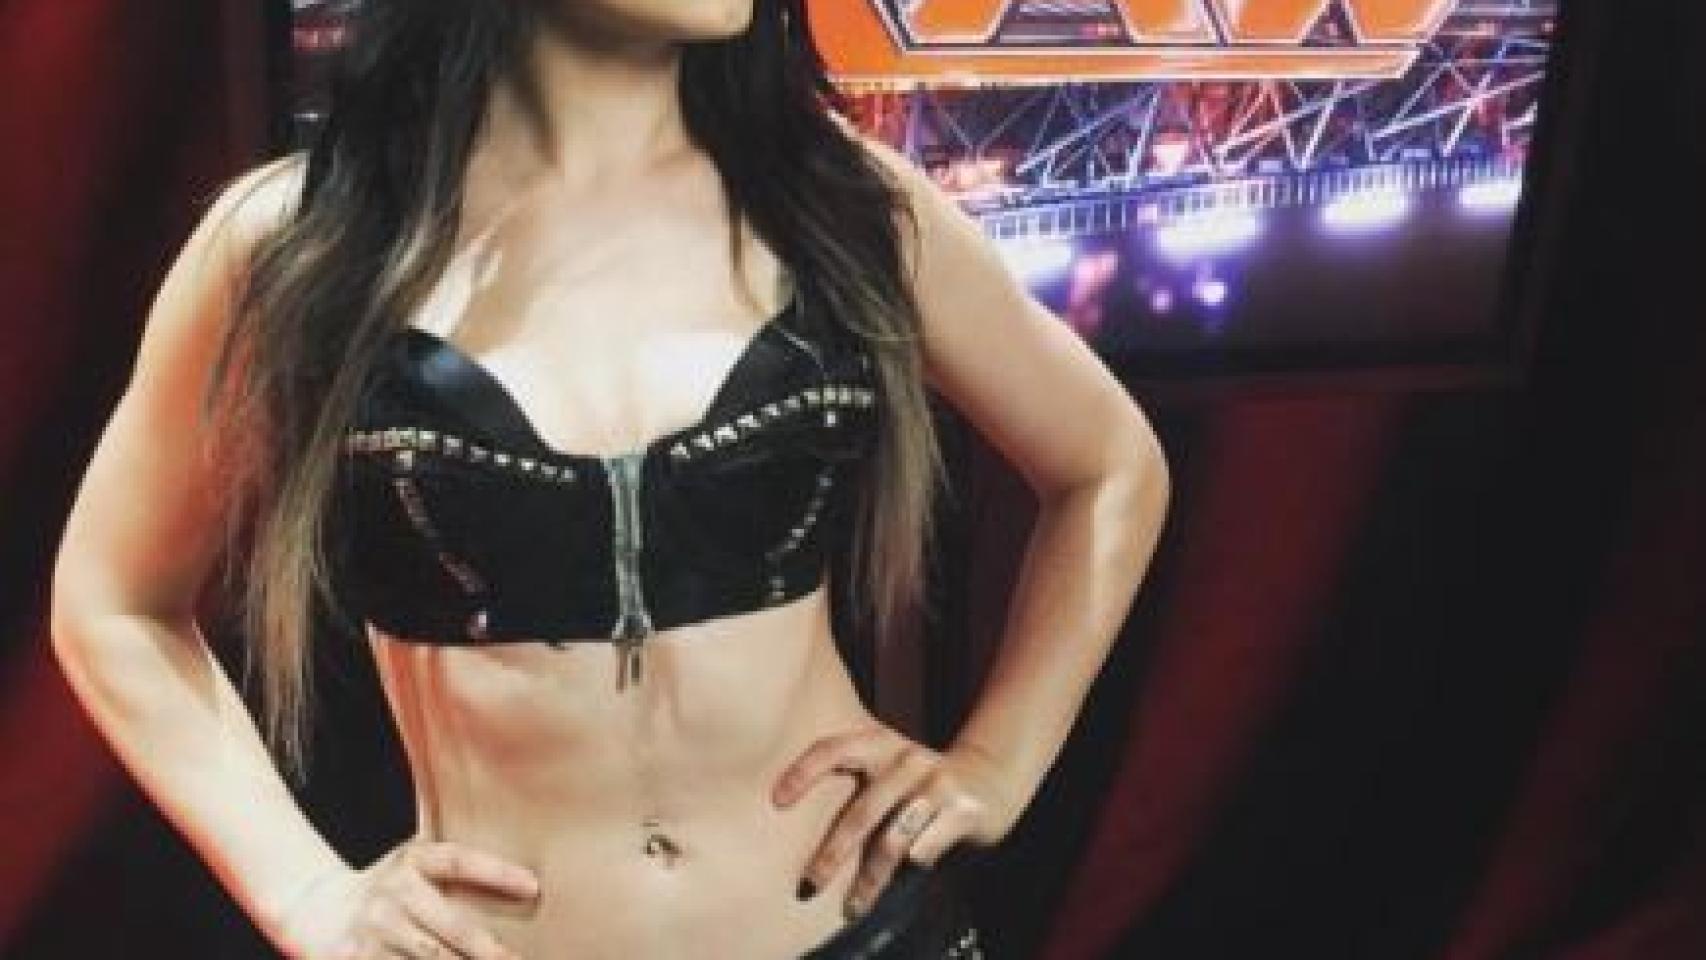 La angustia de la campeona de Wrestling tras filtrarse sus vídeos de contenido sexual Foto